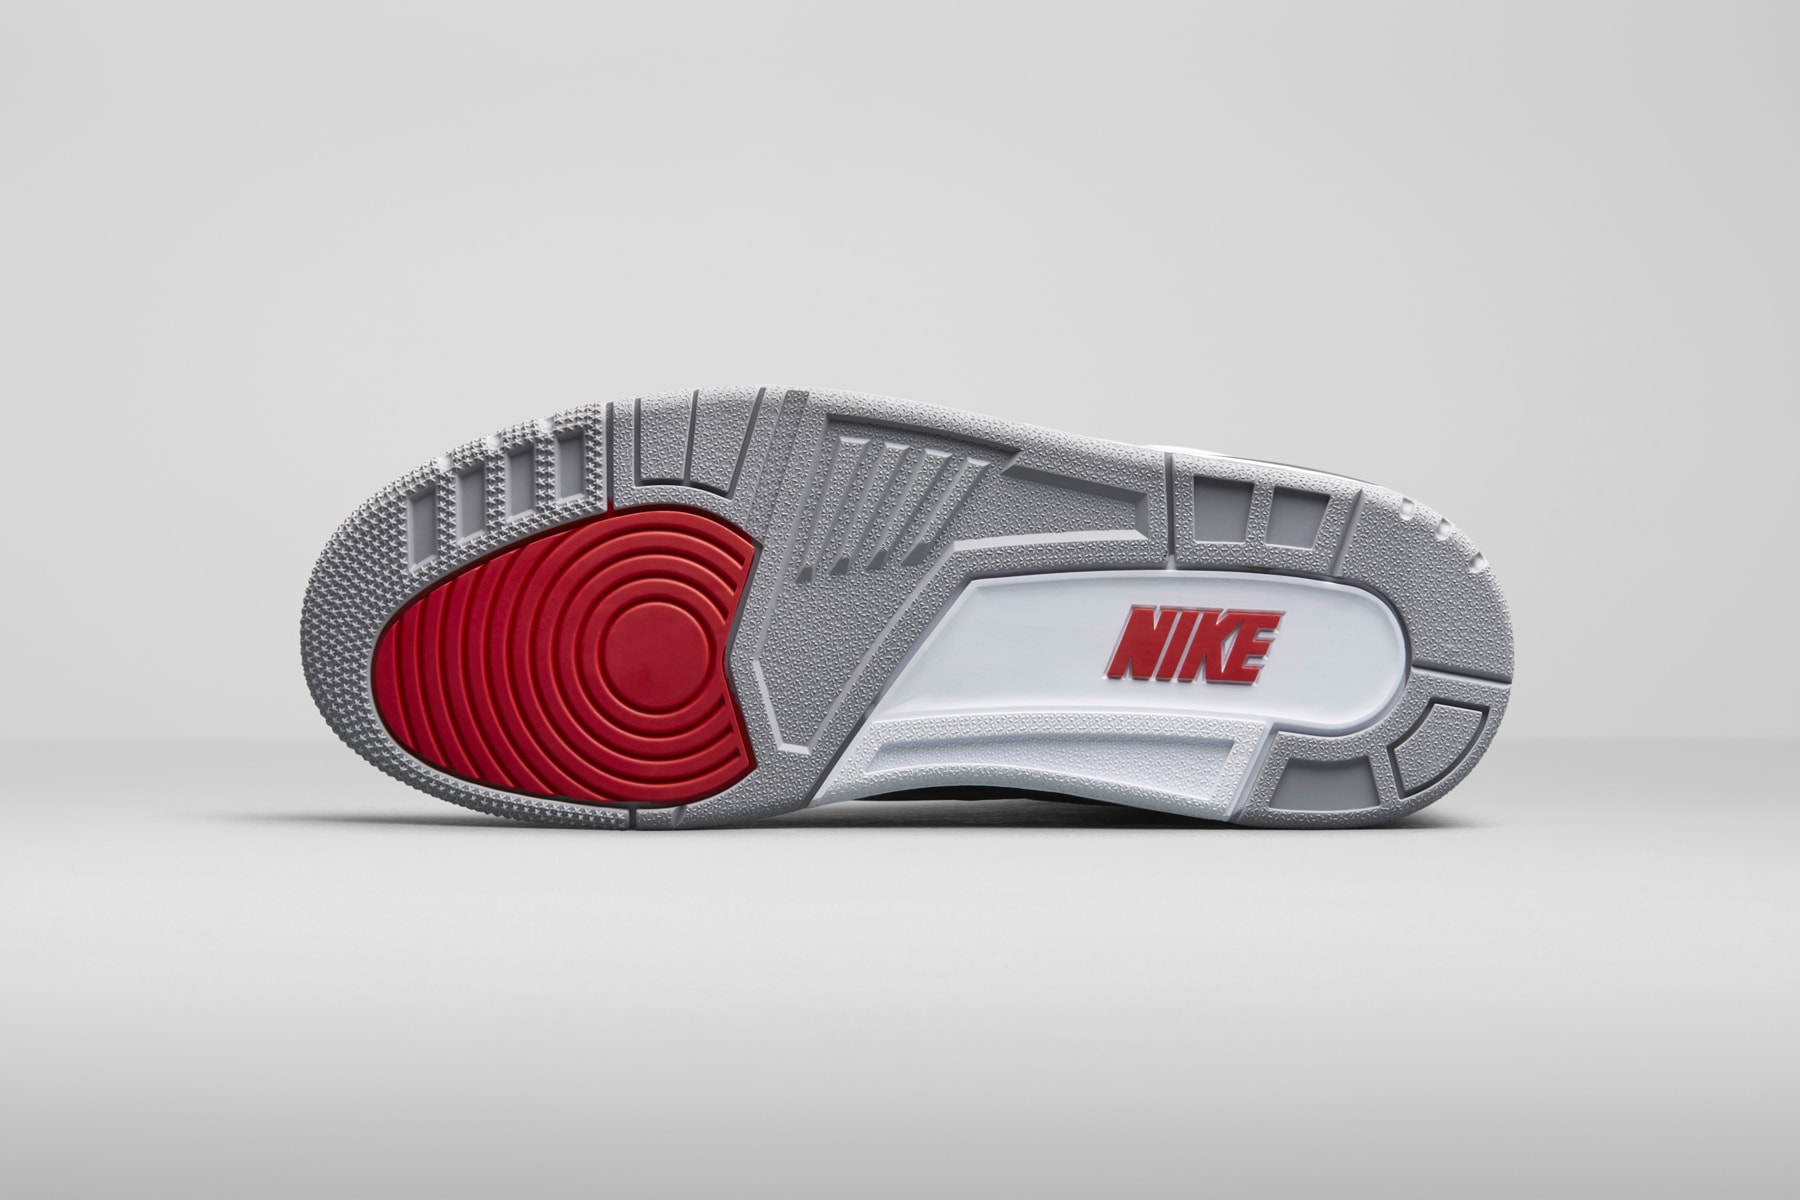 Nike Air Jordan 3 Prototype Tinker Hatfield Sketch